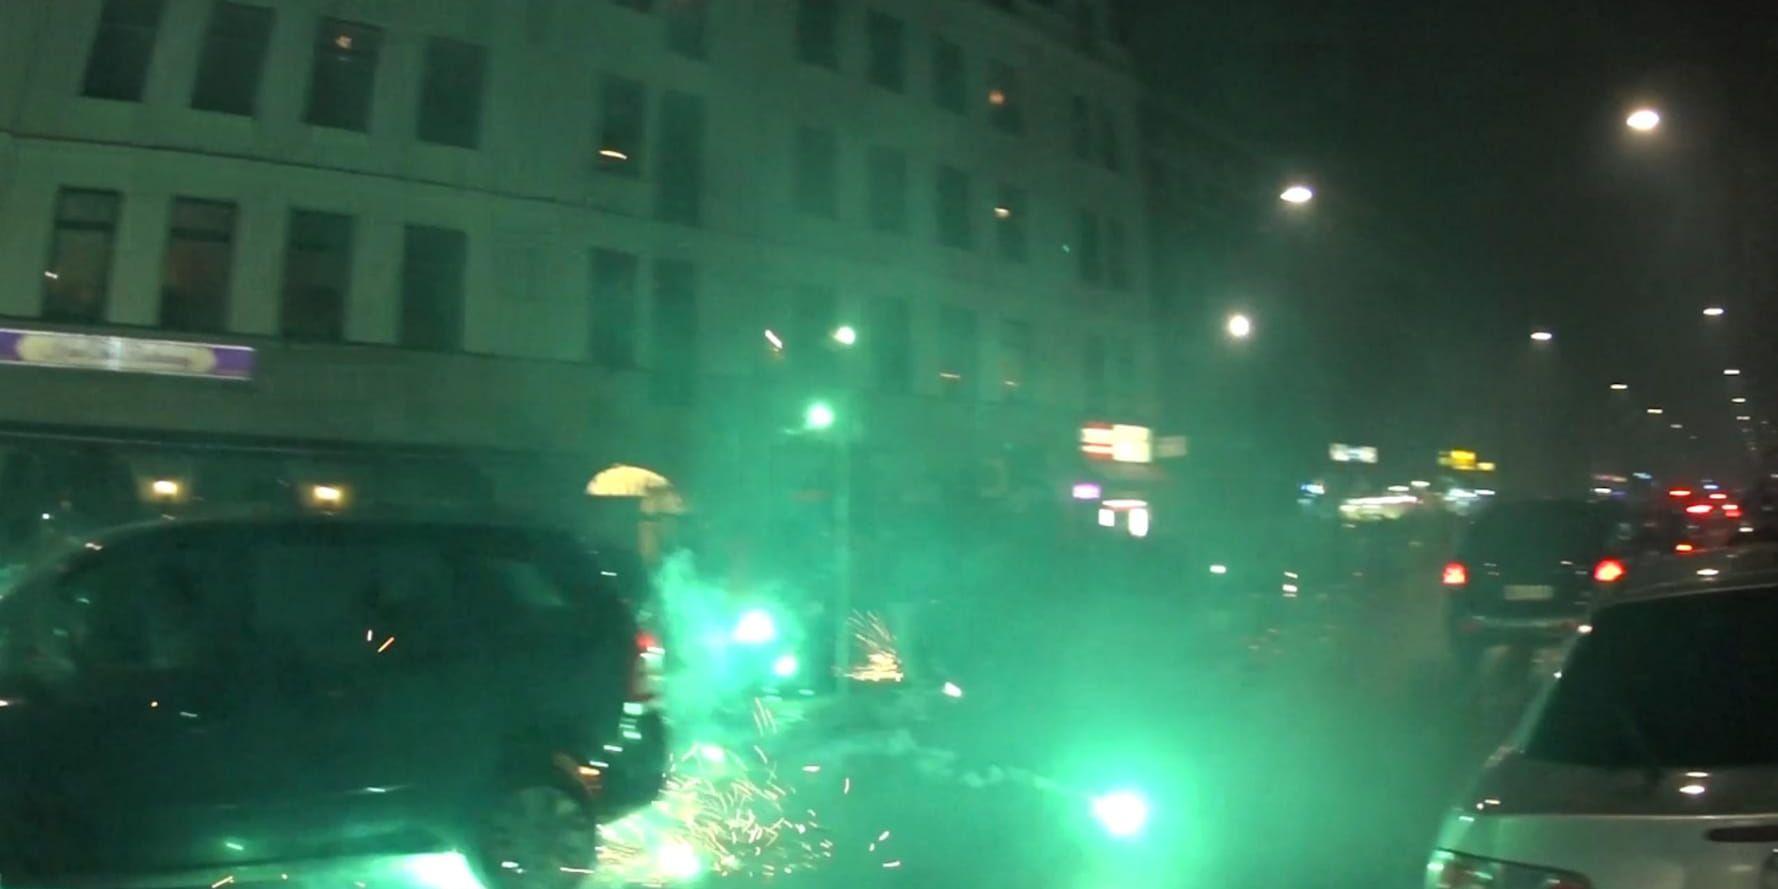 Möllevångstorget i Malmö under nyårsfirandet 2016. Raketer skjuts rakt in bland nyårsfirande människor. Arkivbild.